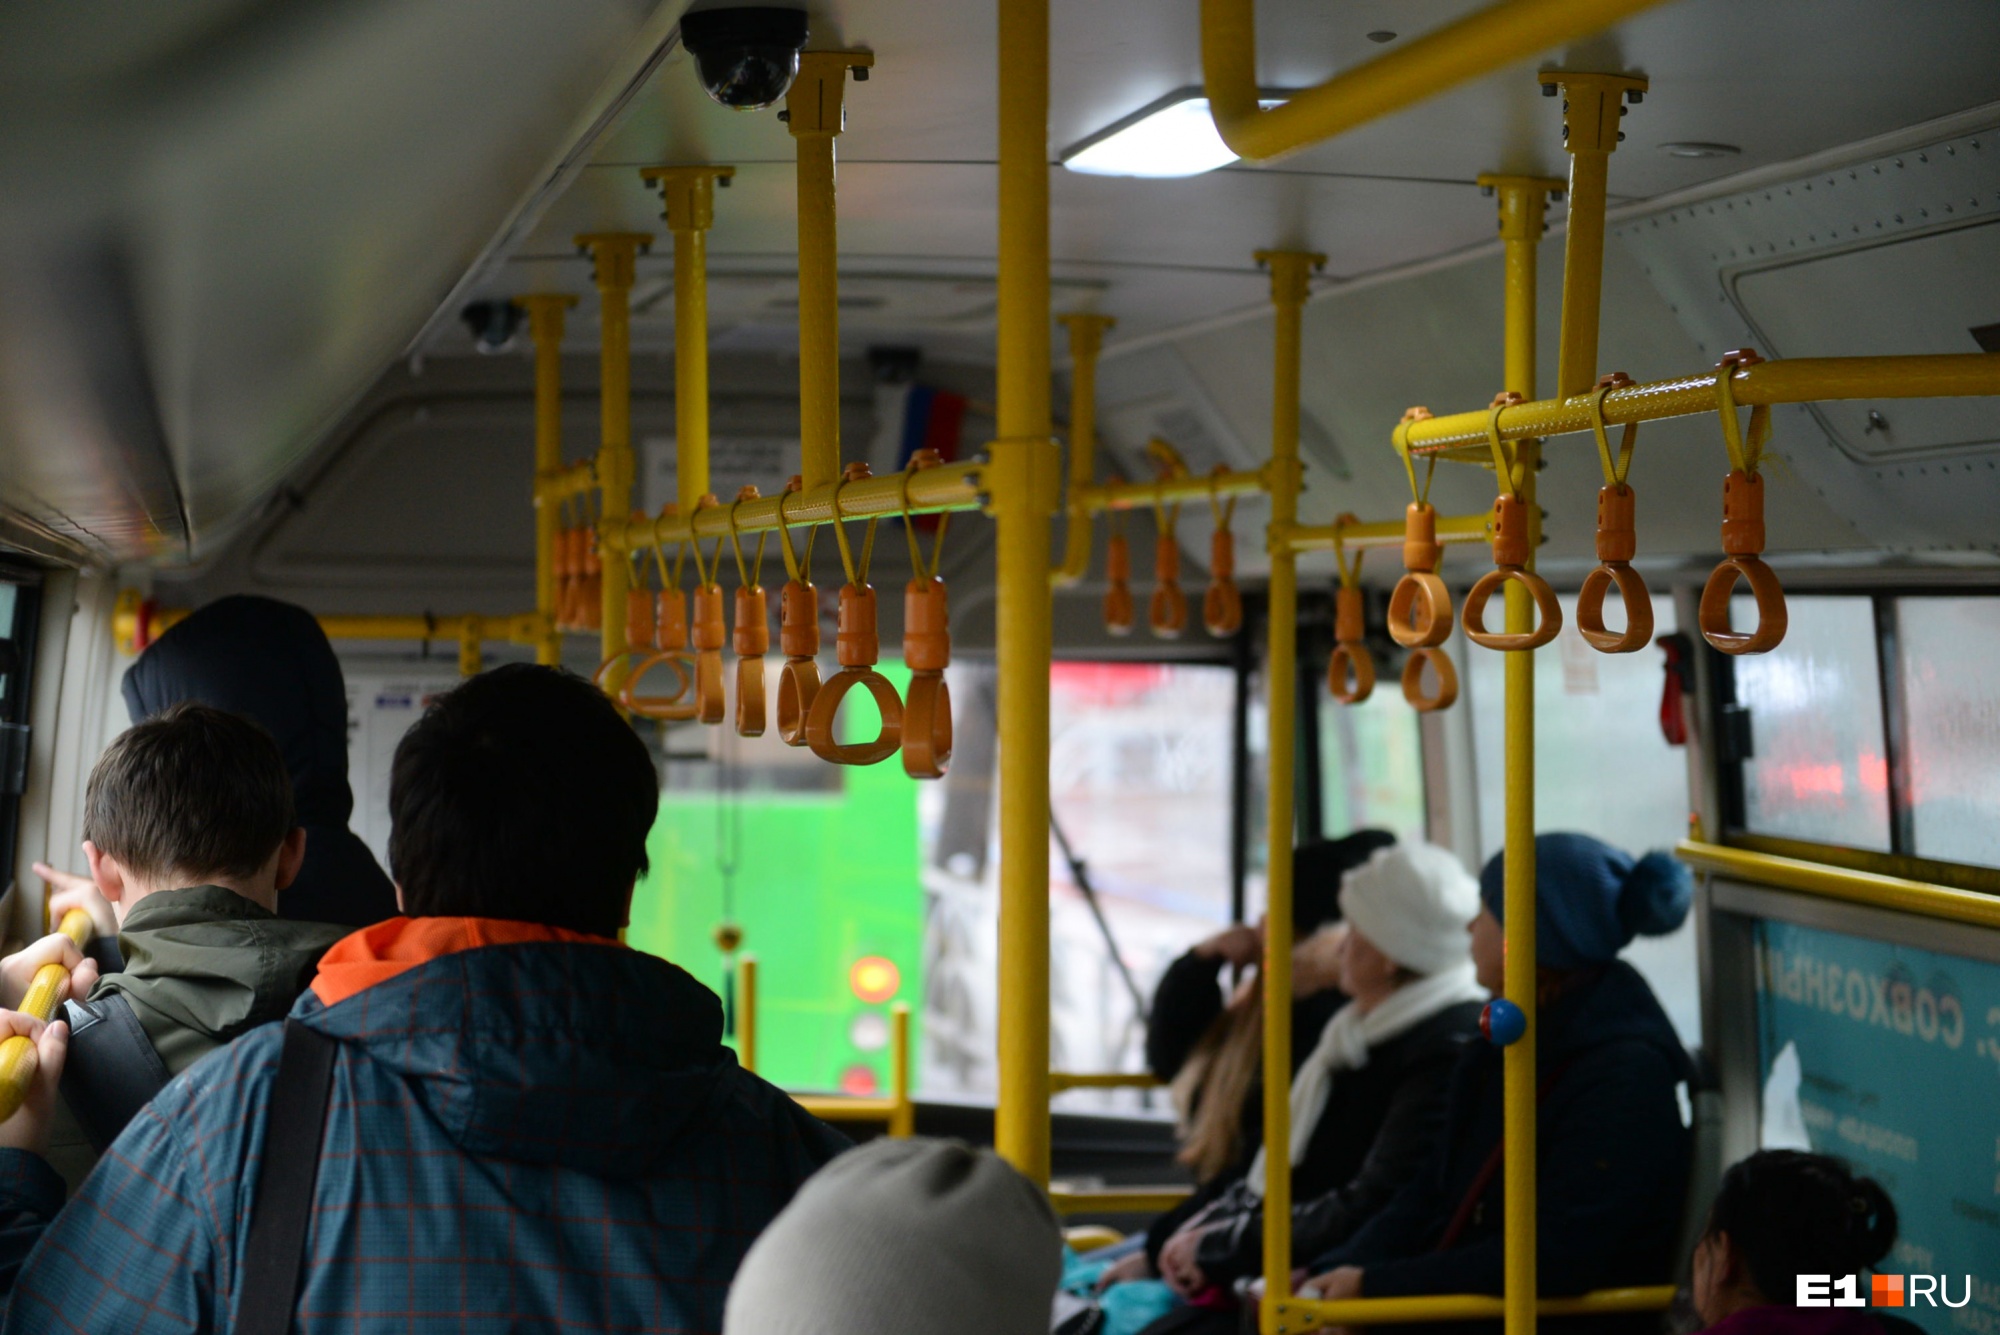 В Екатеринбурге снизили стоимость проезда в общественном транспорте. Кому повезло?